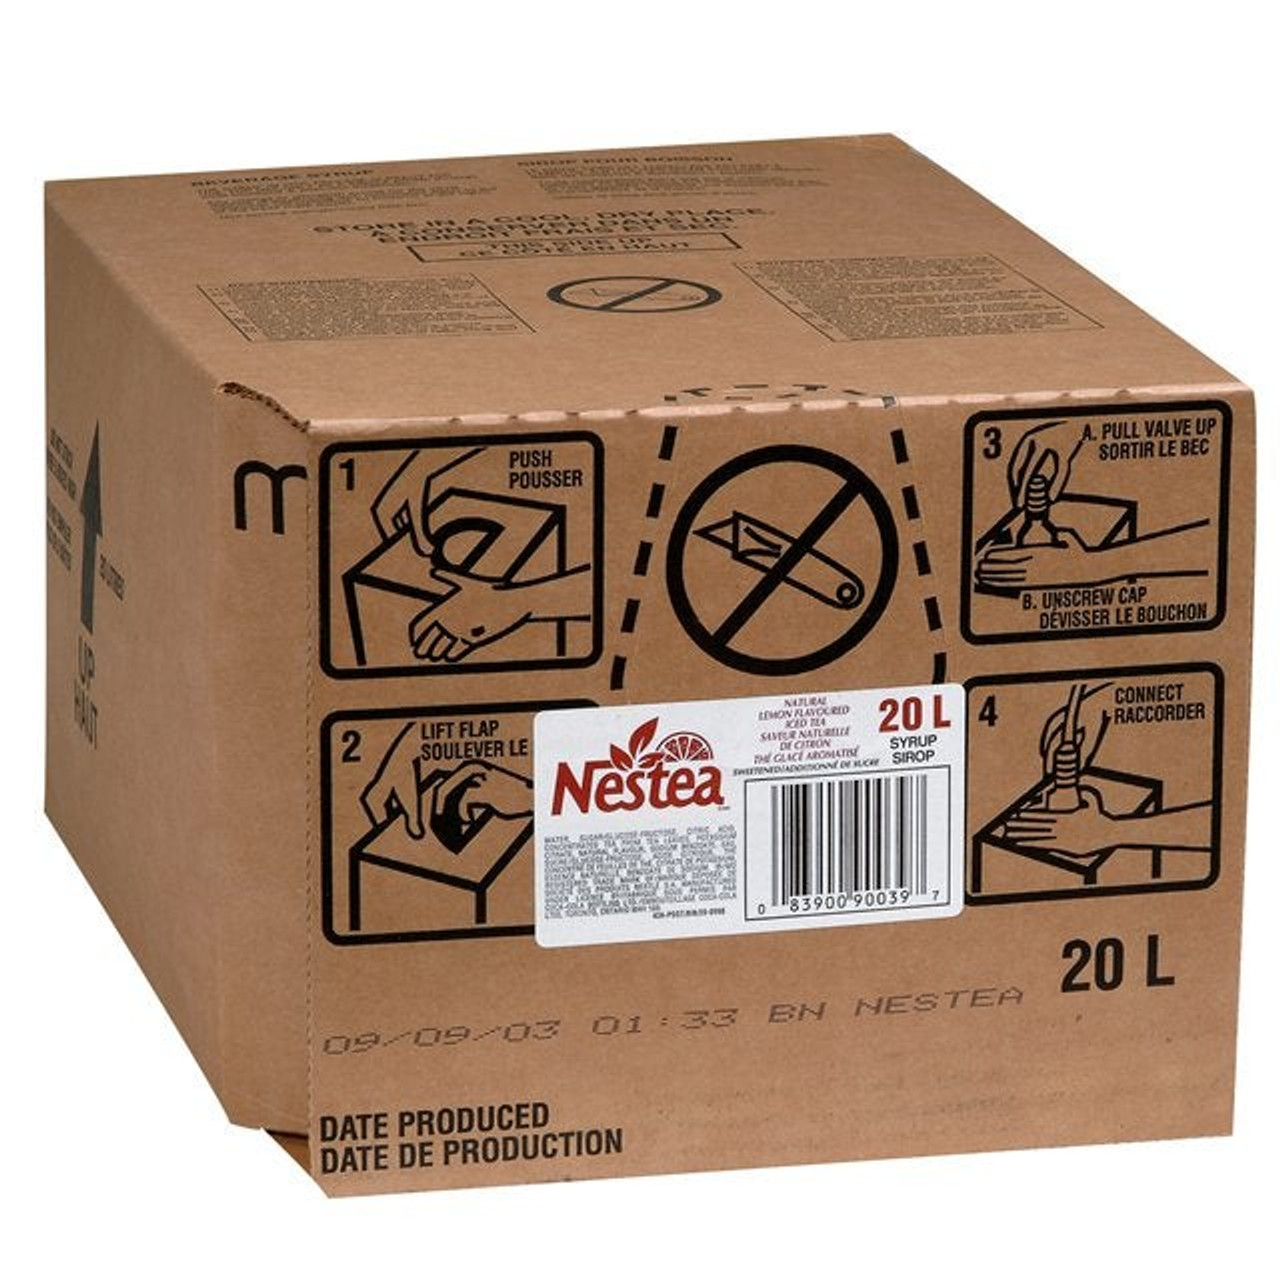 Nestea Nestea Iced Tea, Bib | 20L/Unit, 1 Unit/Case